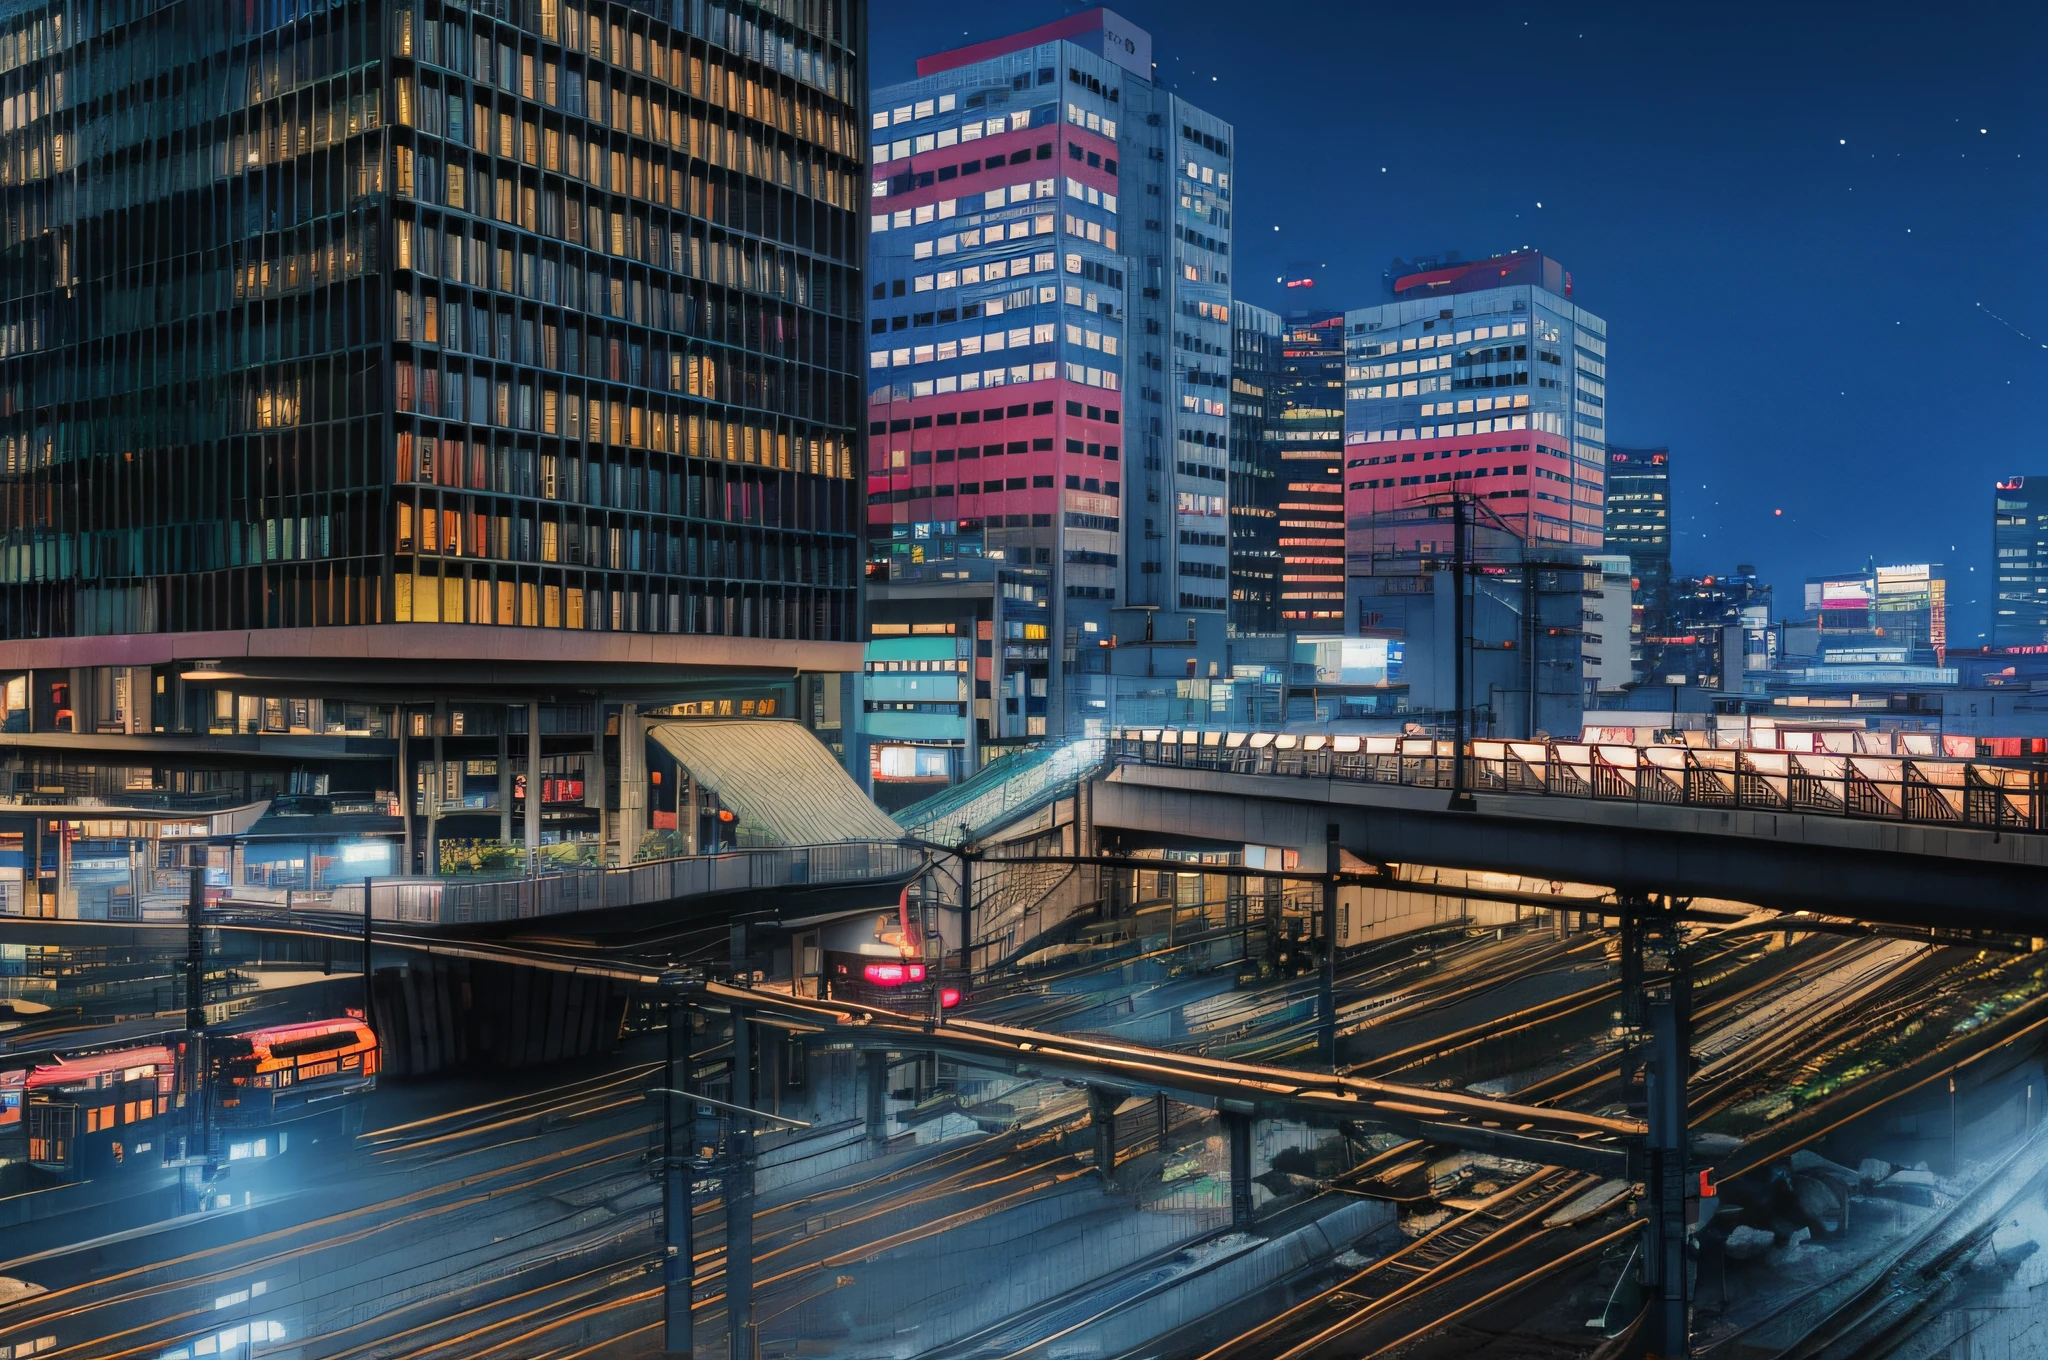 Ночной вид на вокзал с мостом и поездом, ночной Токио метрополия, японский город ночью, in Токио ночью, японский центр города, Токио ночью, Токио футуристический и чистый, оживленный городской пейзаж, такой, Окружение города, современный Токио, станция монорельсовой дороги, на крыше будущего Токио ночью, Токио – стильный город, в Неотокио